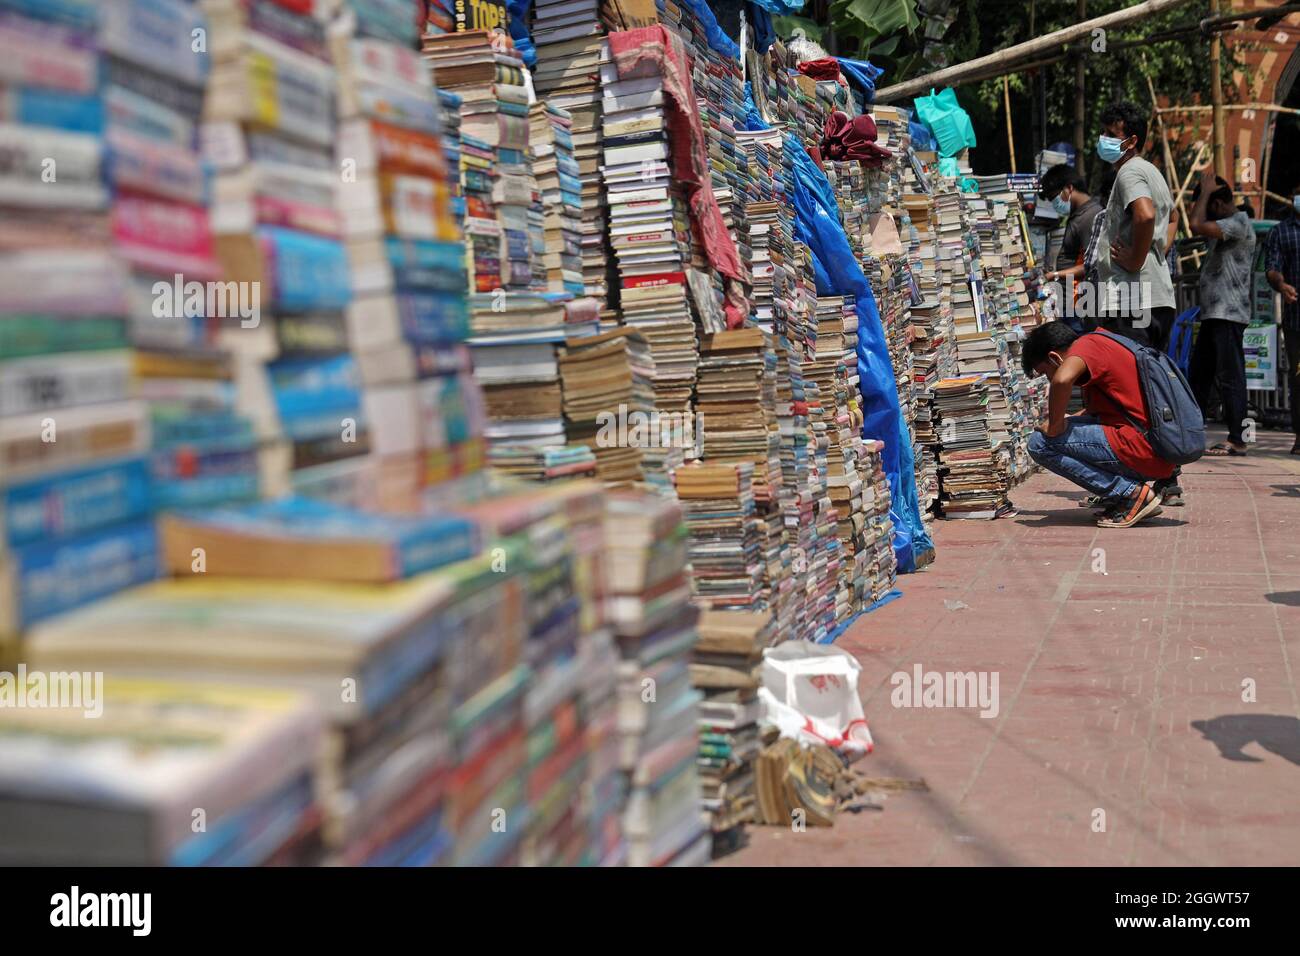 Dhaka, Bangladesch. September 2021. Ein Mann sieht aus, wie viele Bücher aufgestapelt wurden, die aufgrund der Schließung von Buchhandlungen aufgrund mangelnder Verkäufe aufgrund der Covid-19-Situation zu sehr niedrigen Preisen auf dem externen Markt versteigert wurden. Die alten Buchhandlungen in der Hauptstadt Newmarket haben aufgrund der Schließung von Bildungseinrichtungen aufgrund der Prävalenz von Covid-19 lange Zeit Verluste erlitten. Am 3. September 2021 in Dhaka, Bangladesch. Kredit: Eyepix Gruppe/Alamy Live Nachrichten Gutschrift: Eyepix Gruppe/Alamy Live Nachrichten Stockfoto